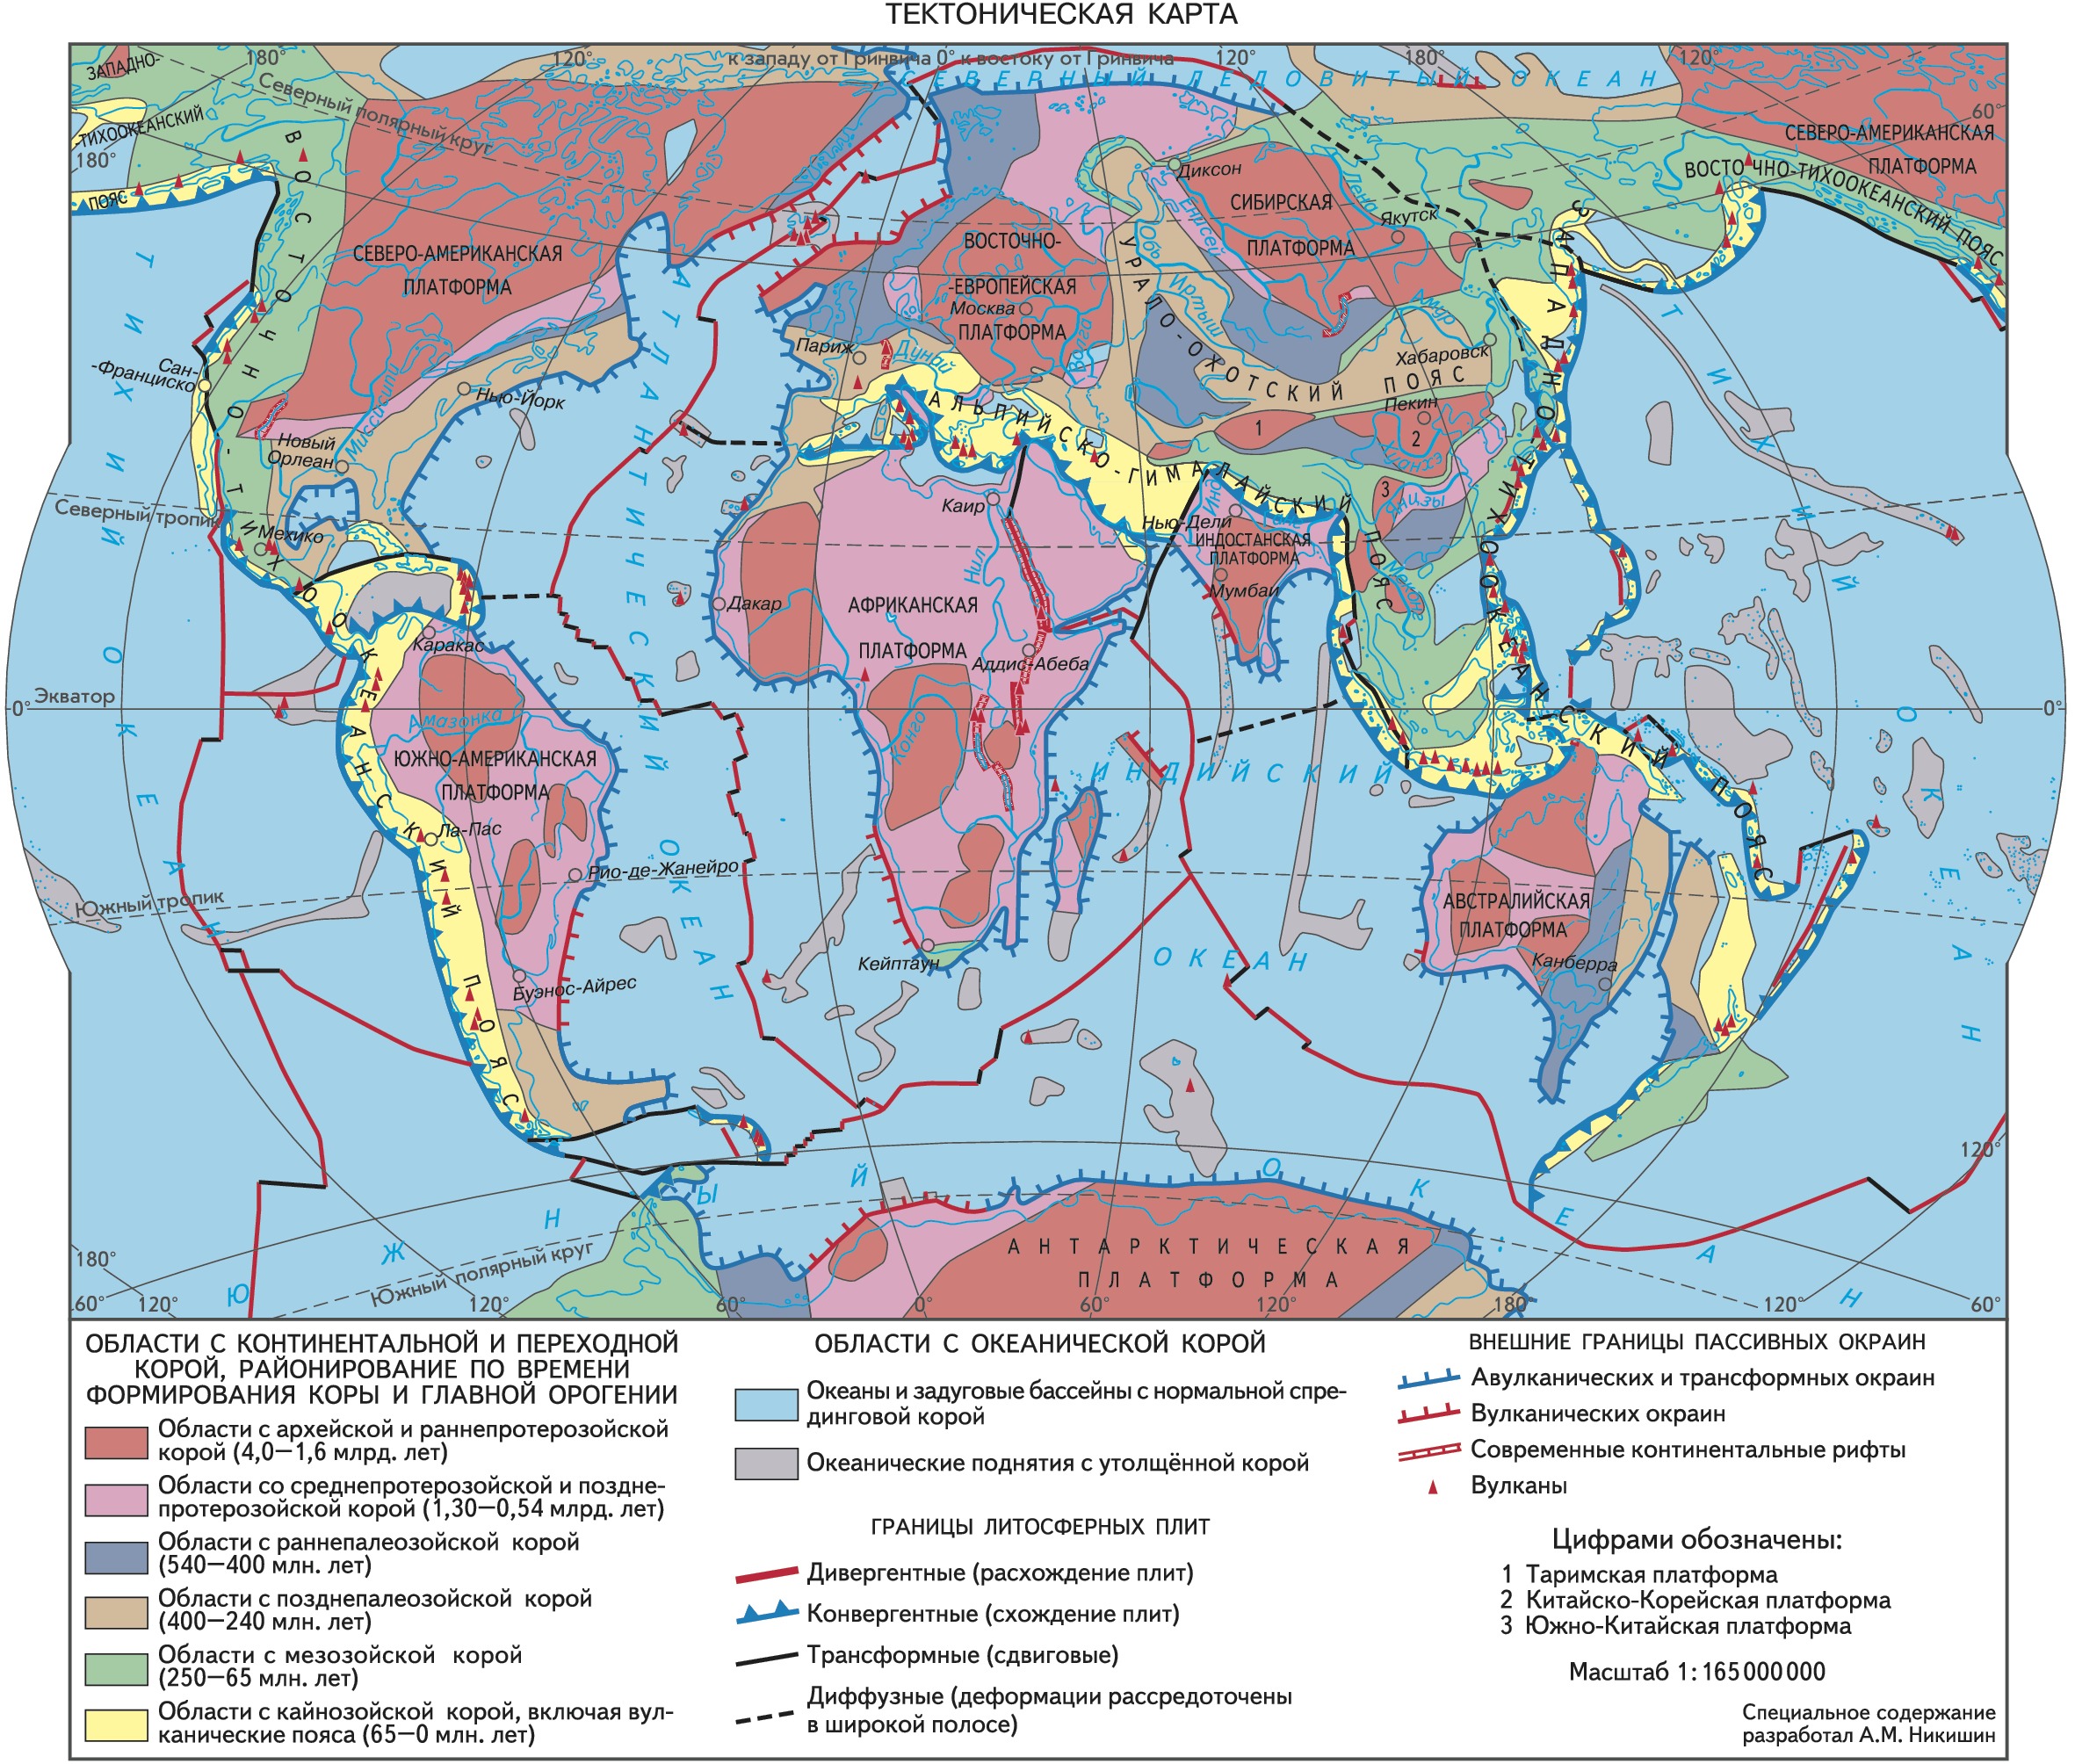 Древние платформы лежат в основании материков. Карта тектоническая тектоническая.